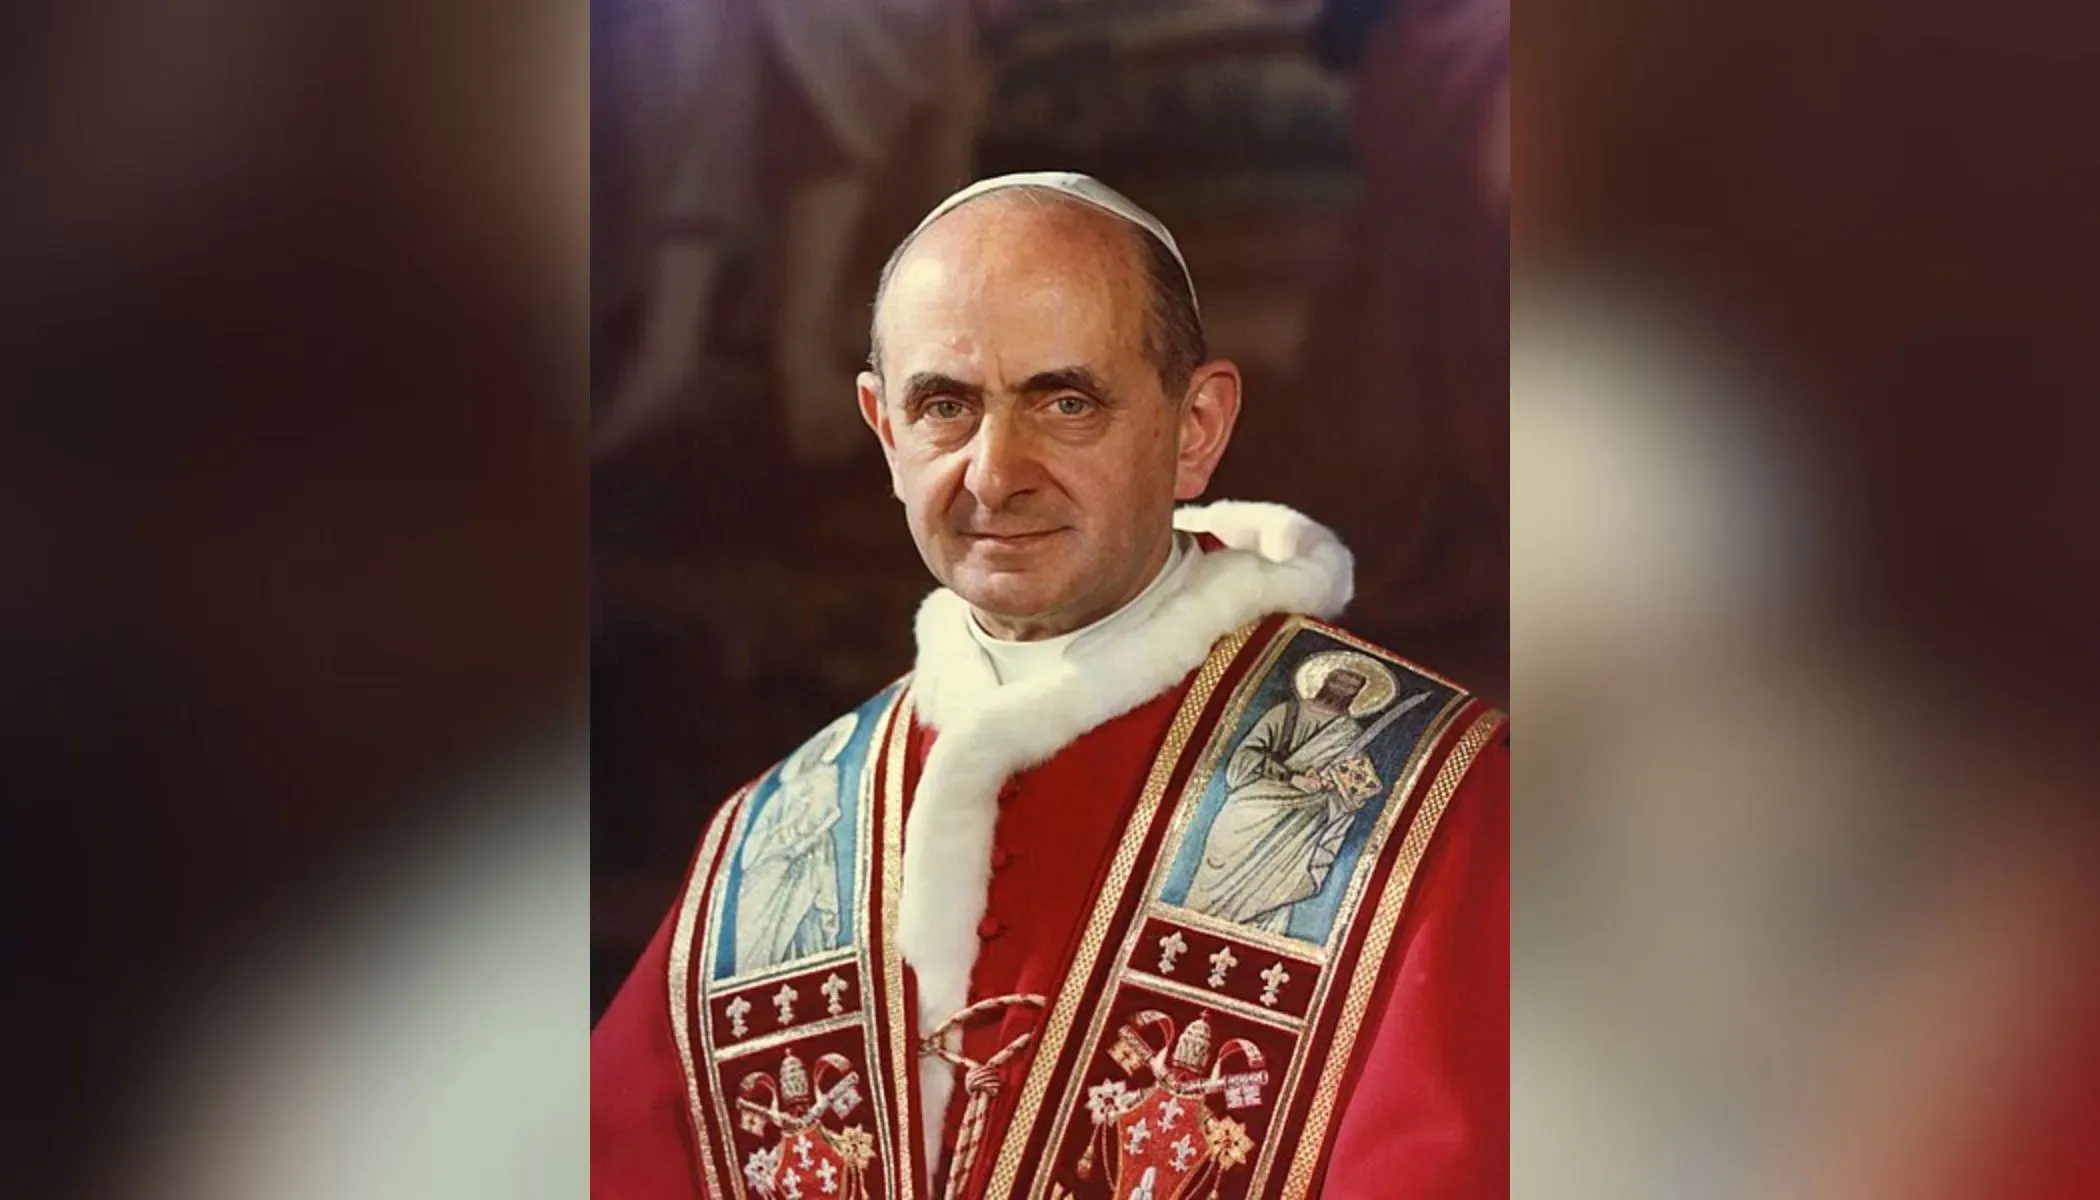 St. Paul VI